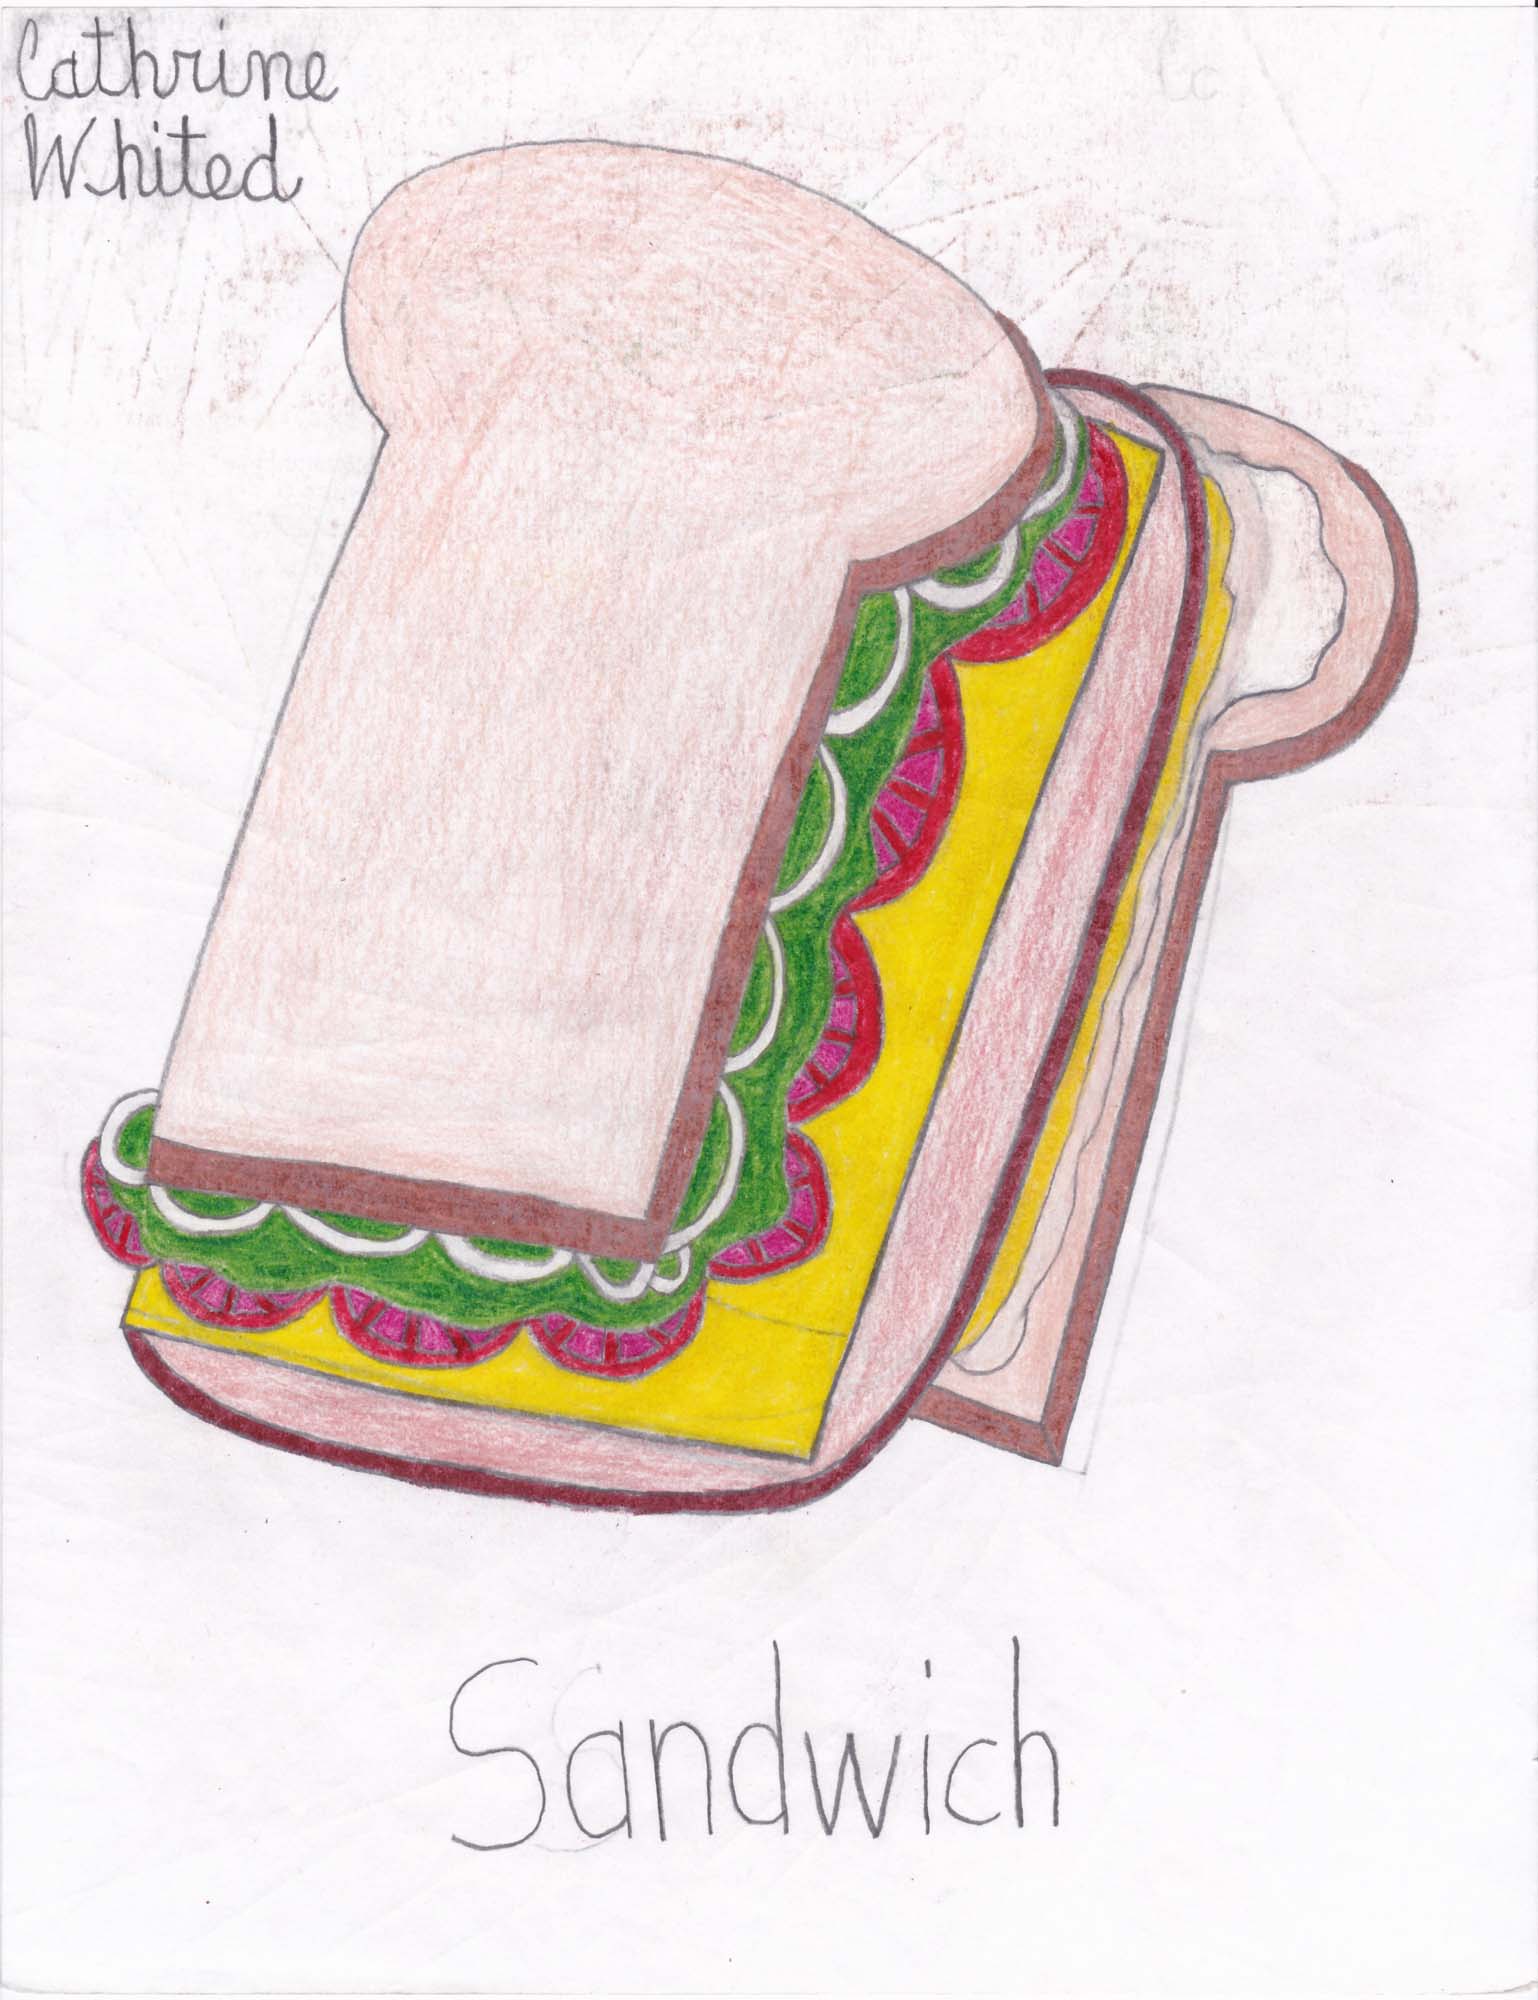 Cathrine Whited, Sandwich 